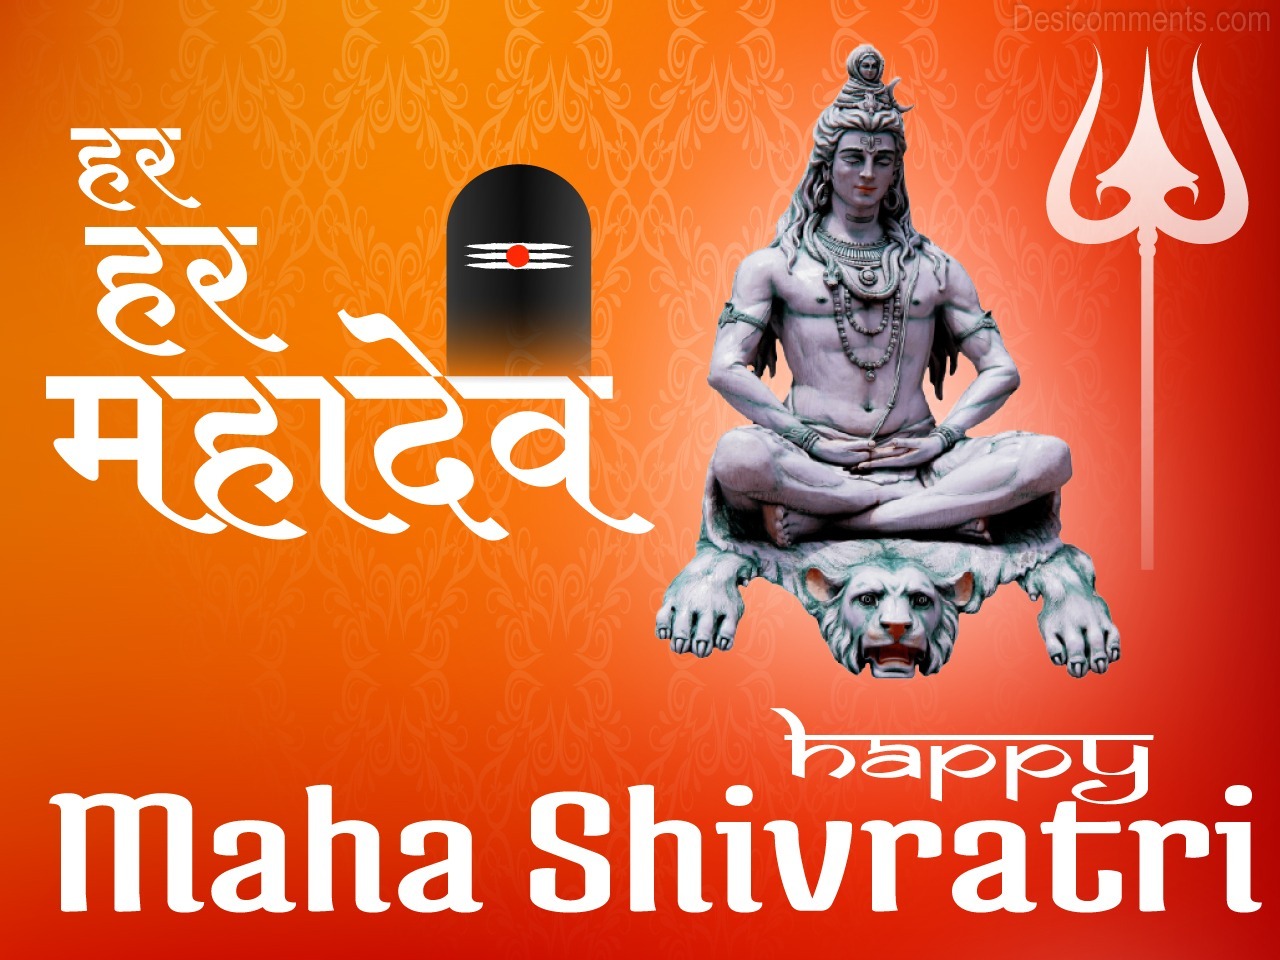 Maha Shivaratri Wallpaper - DesiComments.com